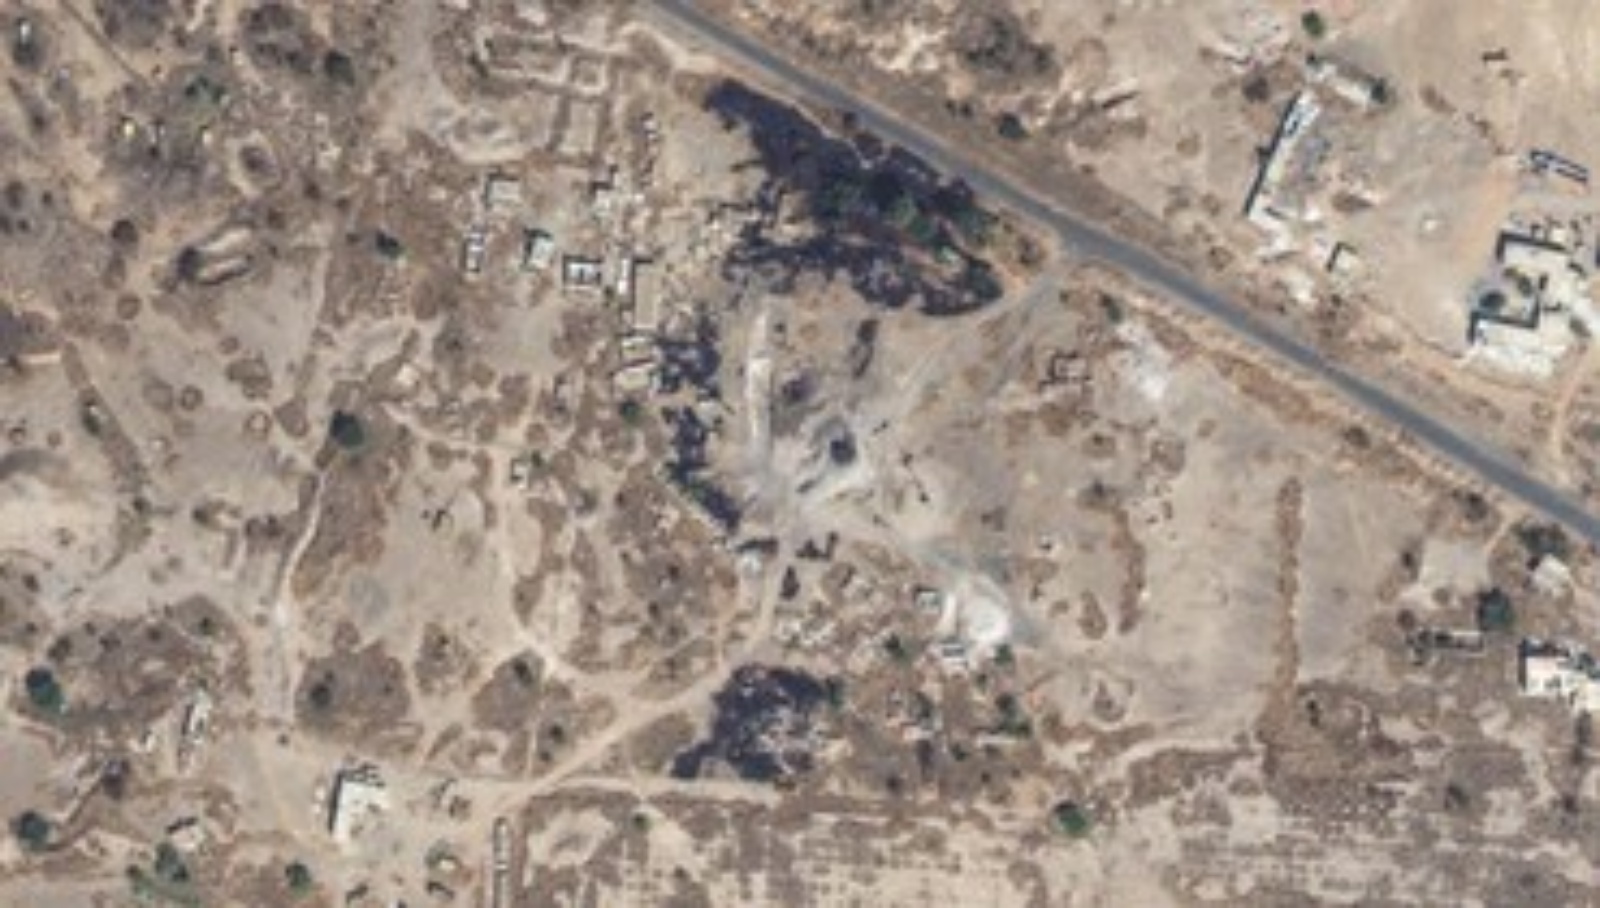 صورة عبر الأقمار الاصطناعية تظهر القصف الأميركي قرب مطار صنعاء. أ ف ب صورة عبر الأقمار الاصطناعية تظهر القصف الأميركي قرب مطار صنعاء